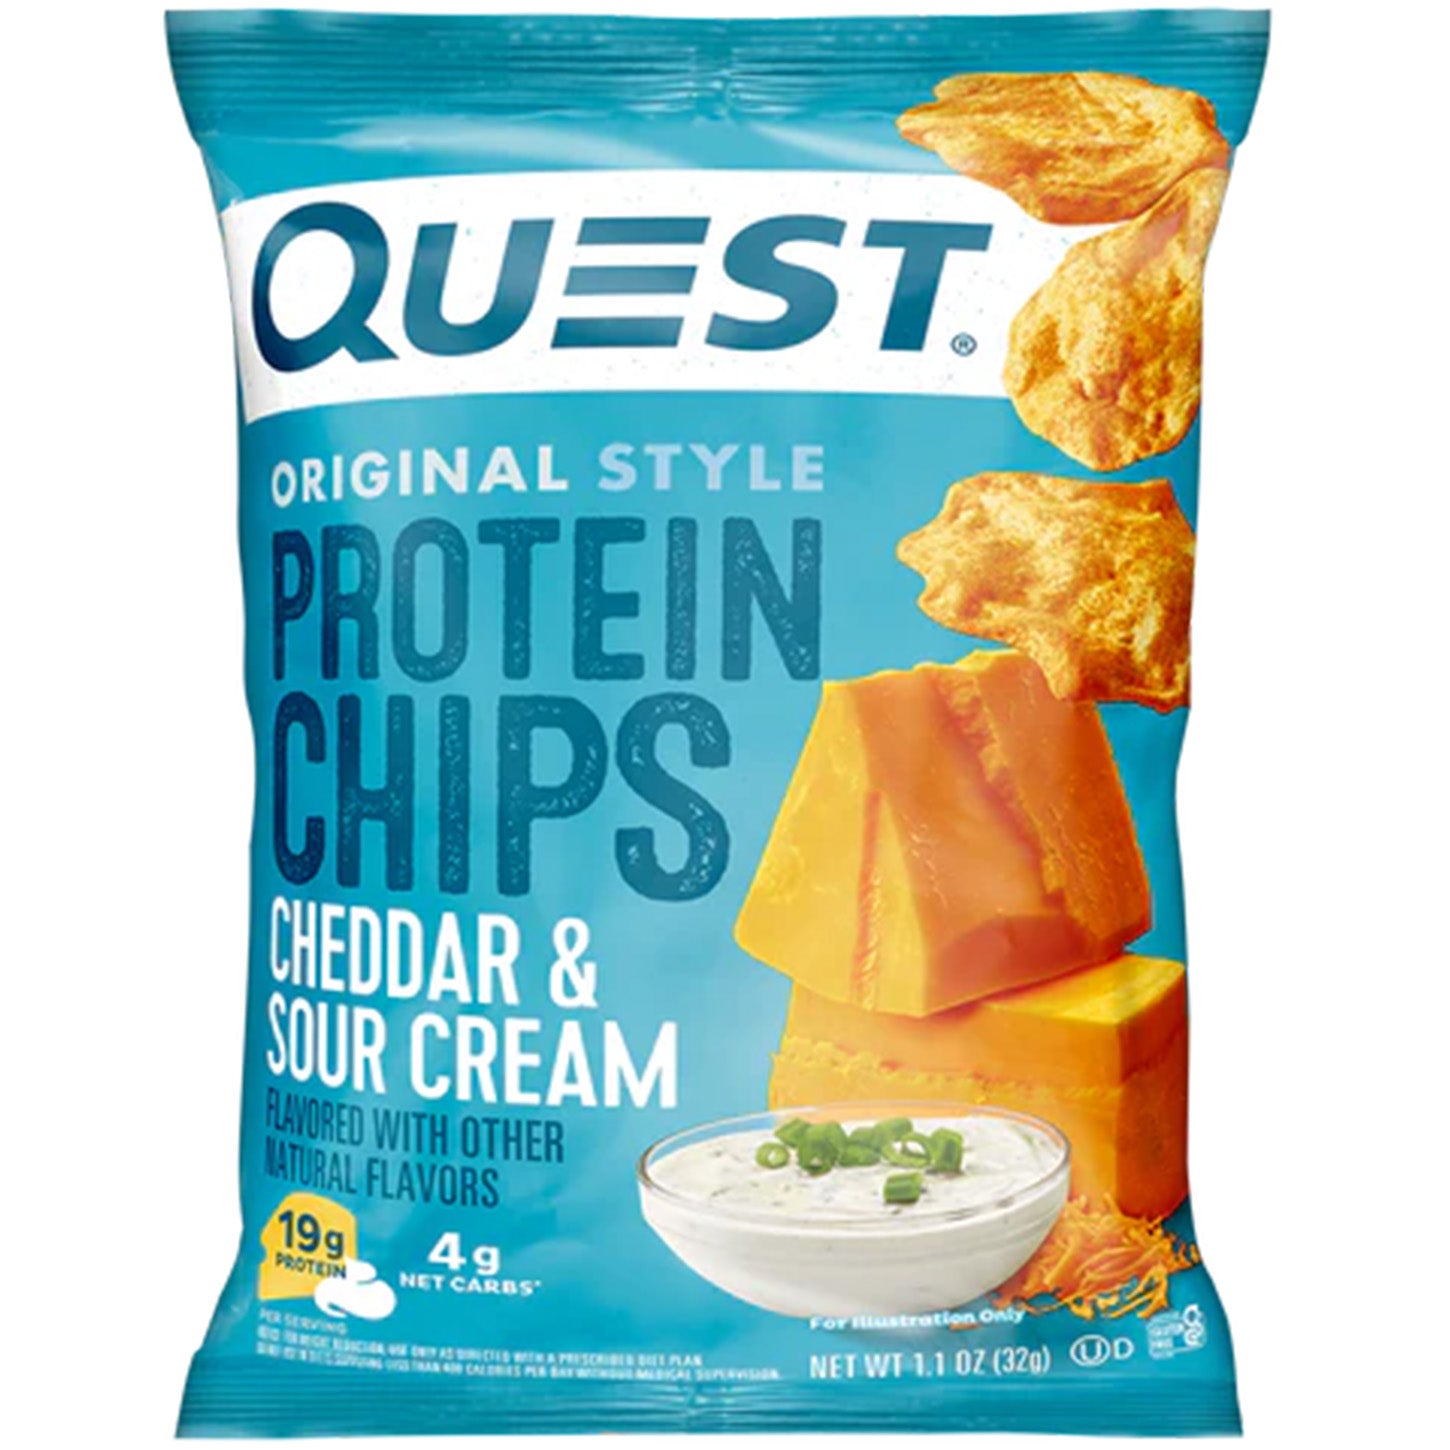 Snacks Saludables y Crujientes: Descubre los Protein Chips de Quest Nutrition | ProHealth Shop [Panamá]